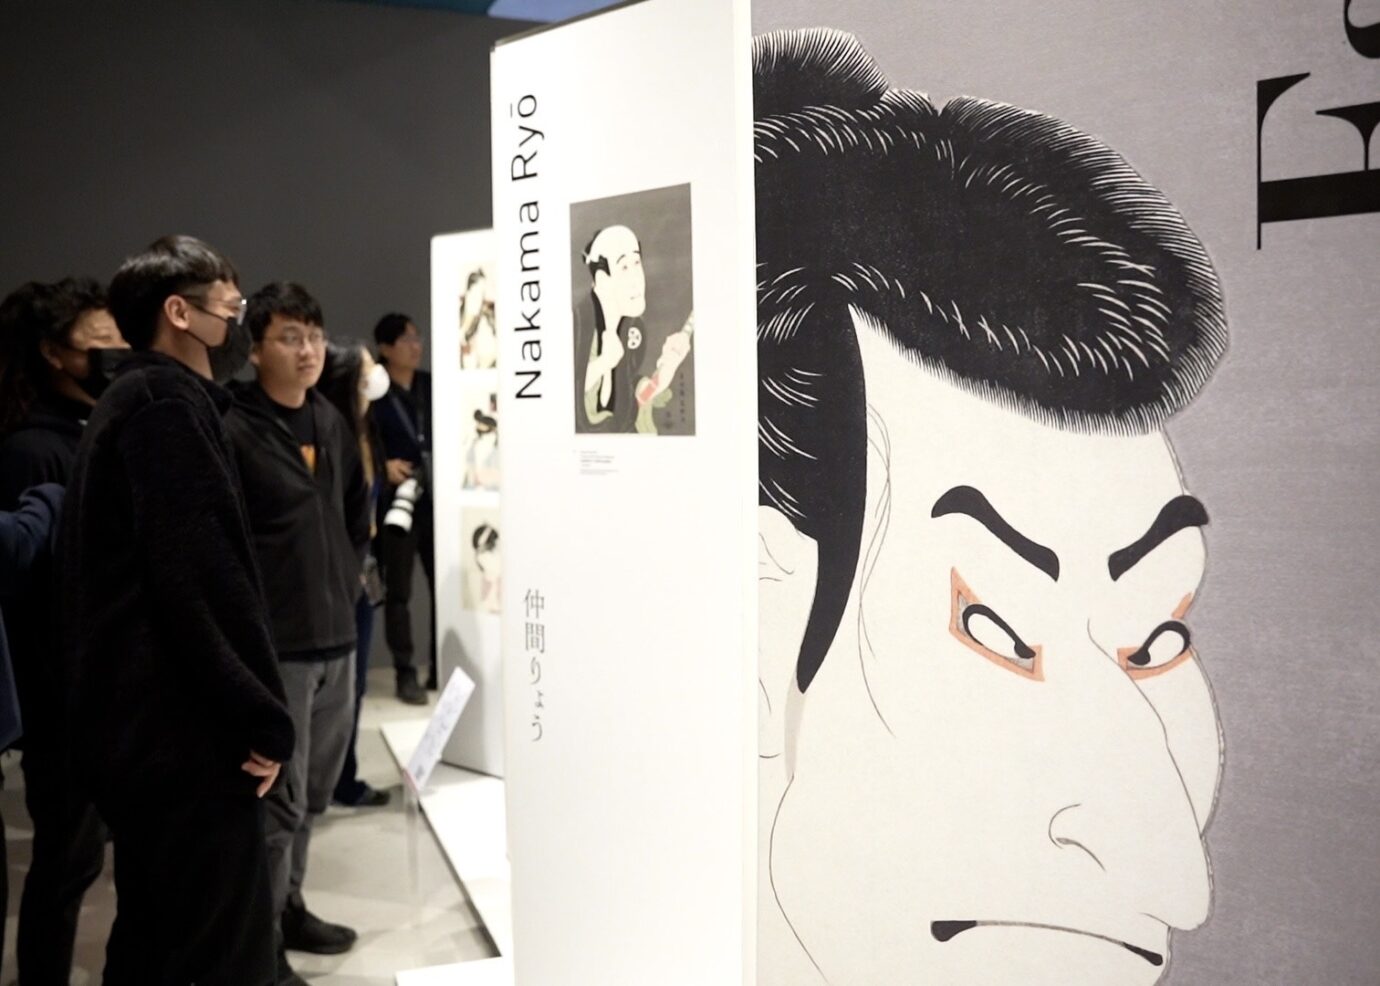 高雄展覽 Manga・北齋・漫畫：從現代日本漫畫看『北斎漫画』